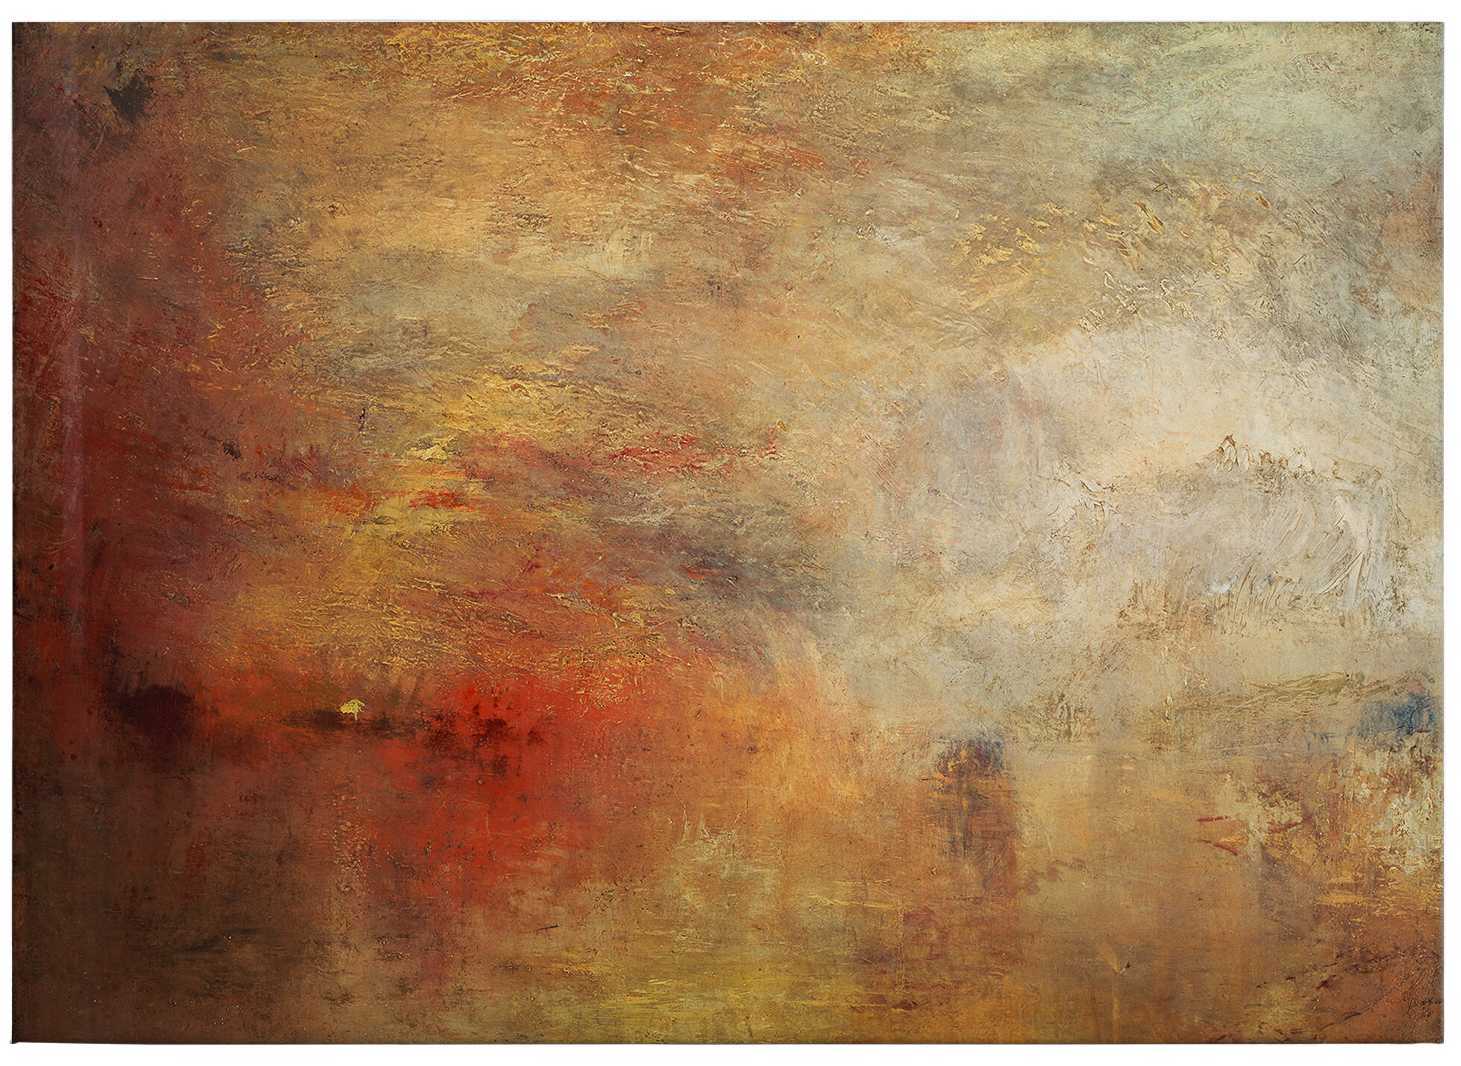             Turner Canvas Schilderij "Zonsondergang over de zee" - 0.70 m x 0.50 m
        